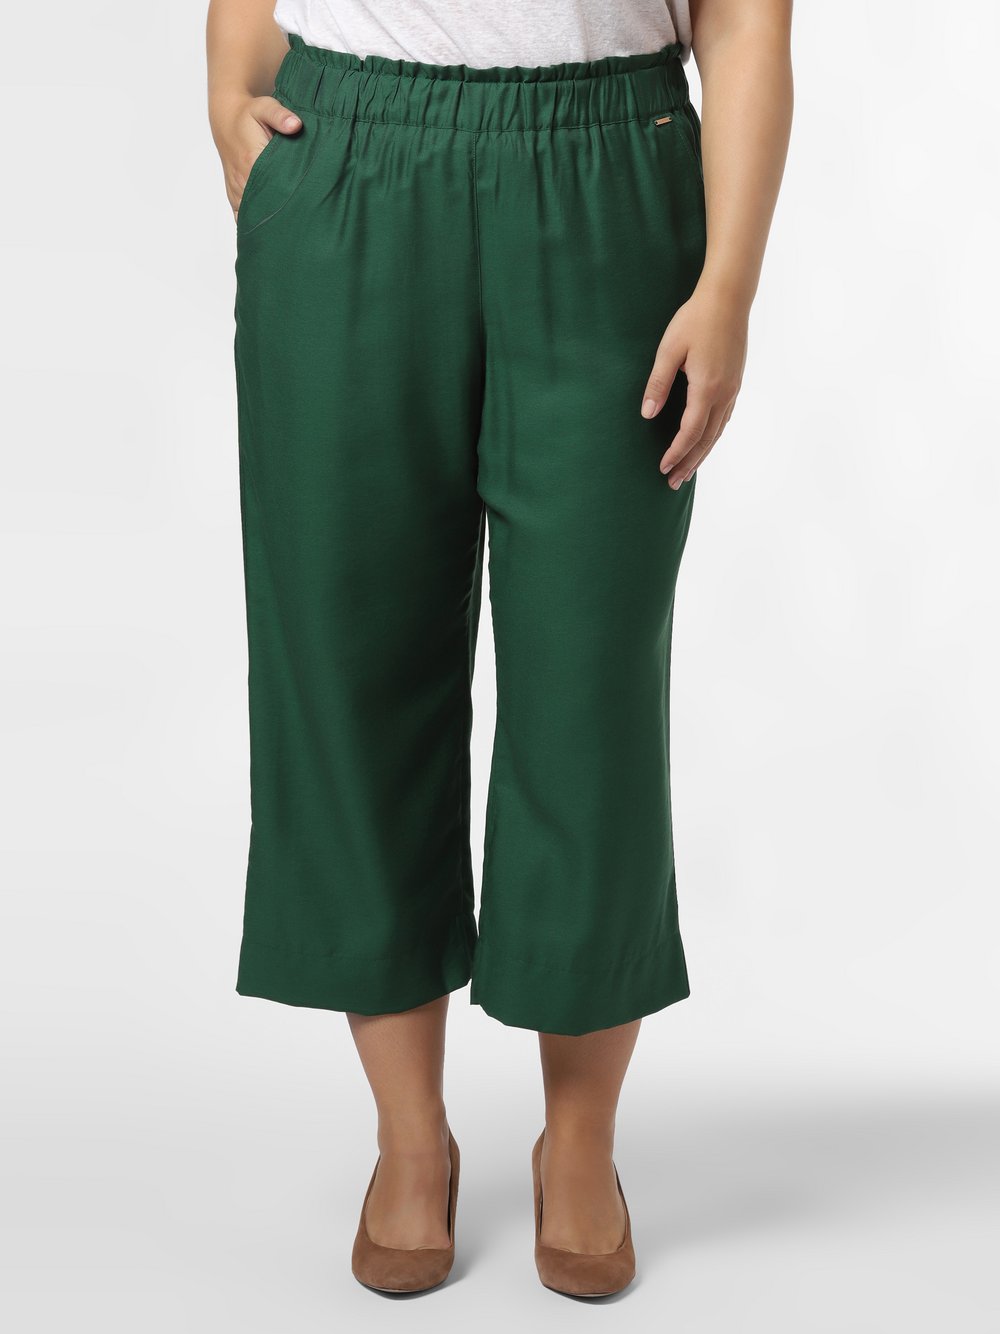 Samoon - Spodnie damskie – Lotta – duże rozmiary, zielony